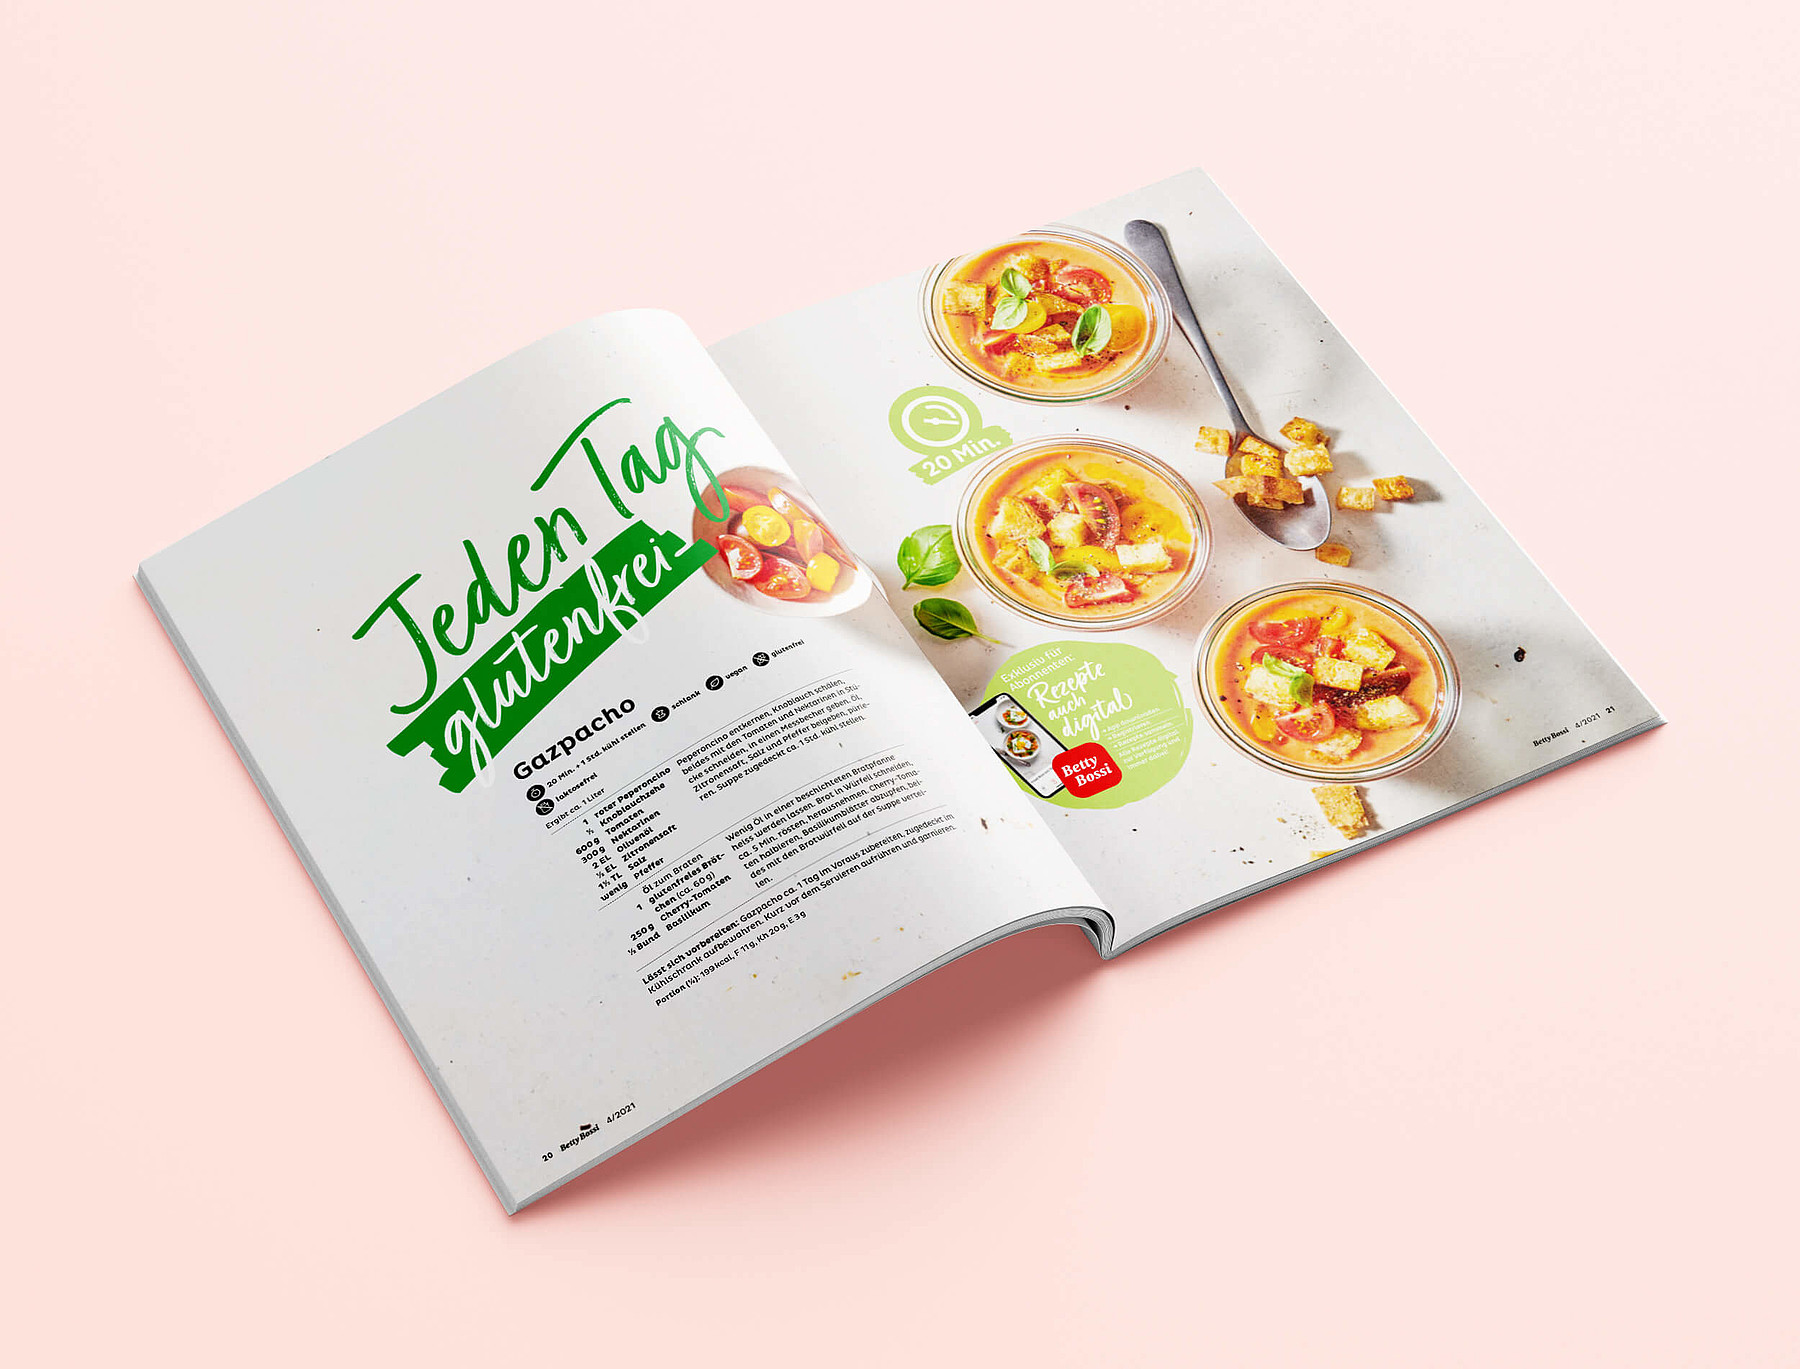 [Translate to Französisch:] Eine aufgeschlagene Ausgabe des Magazins zeigt ein Gazpacho-Rezept.